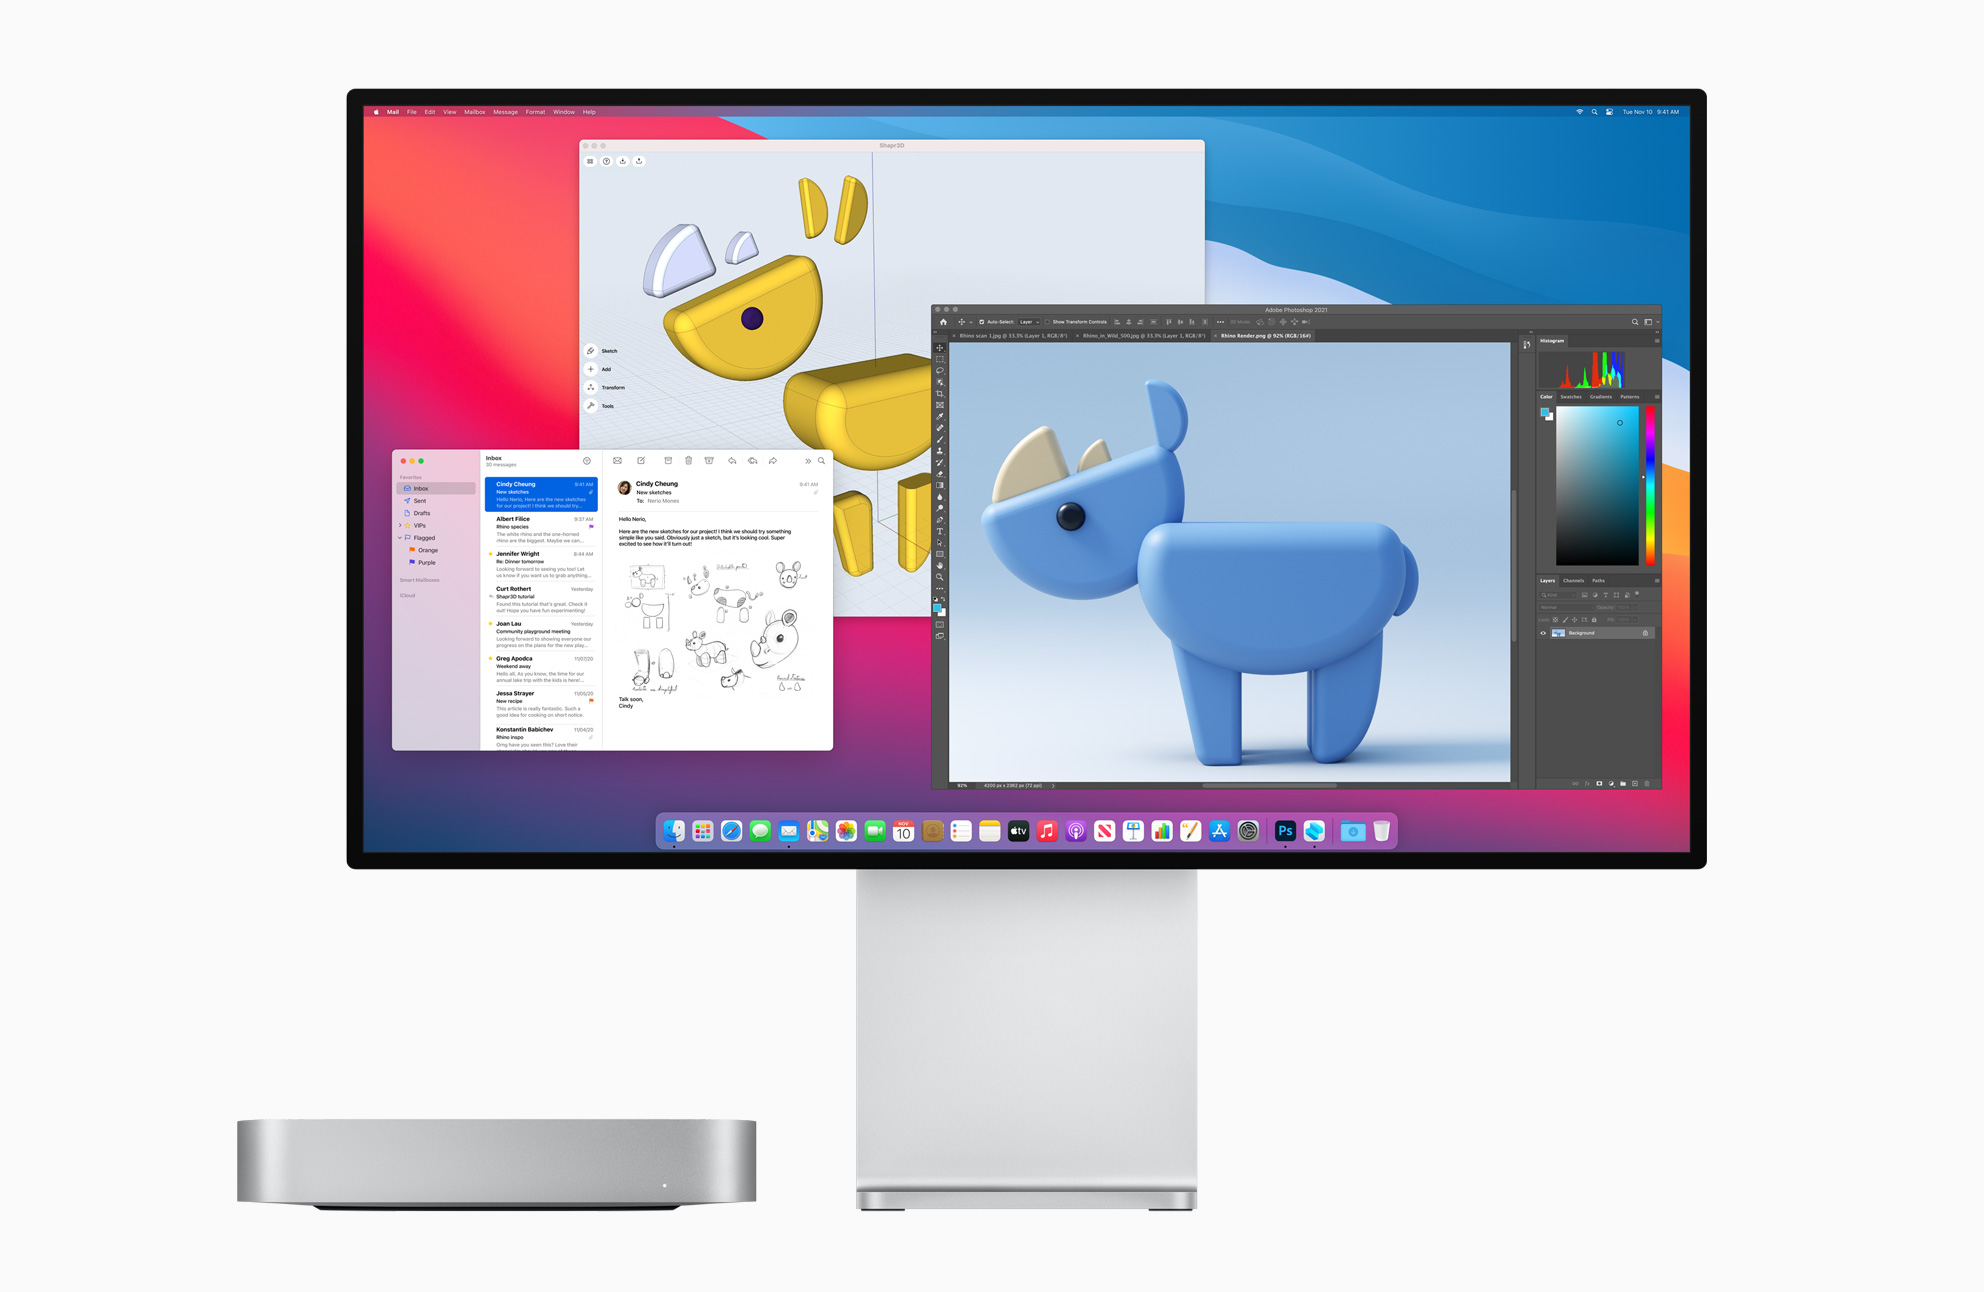 Apple_new-mac-mini-prodisplay-bigsur-screen_11102020